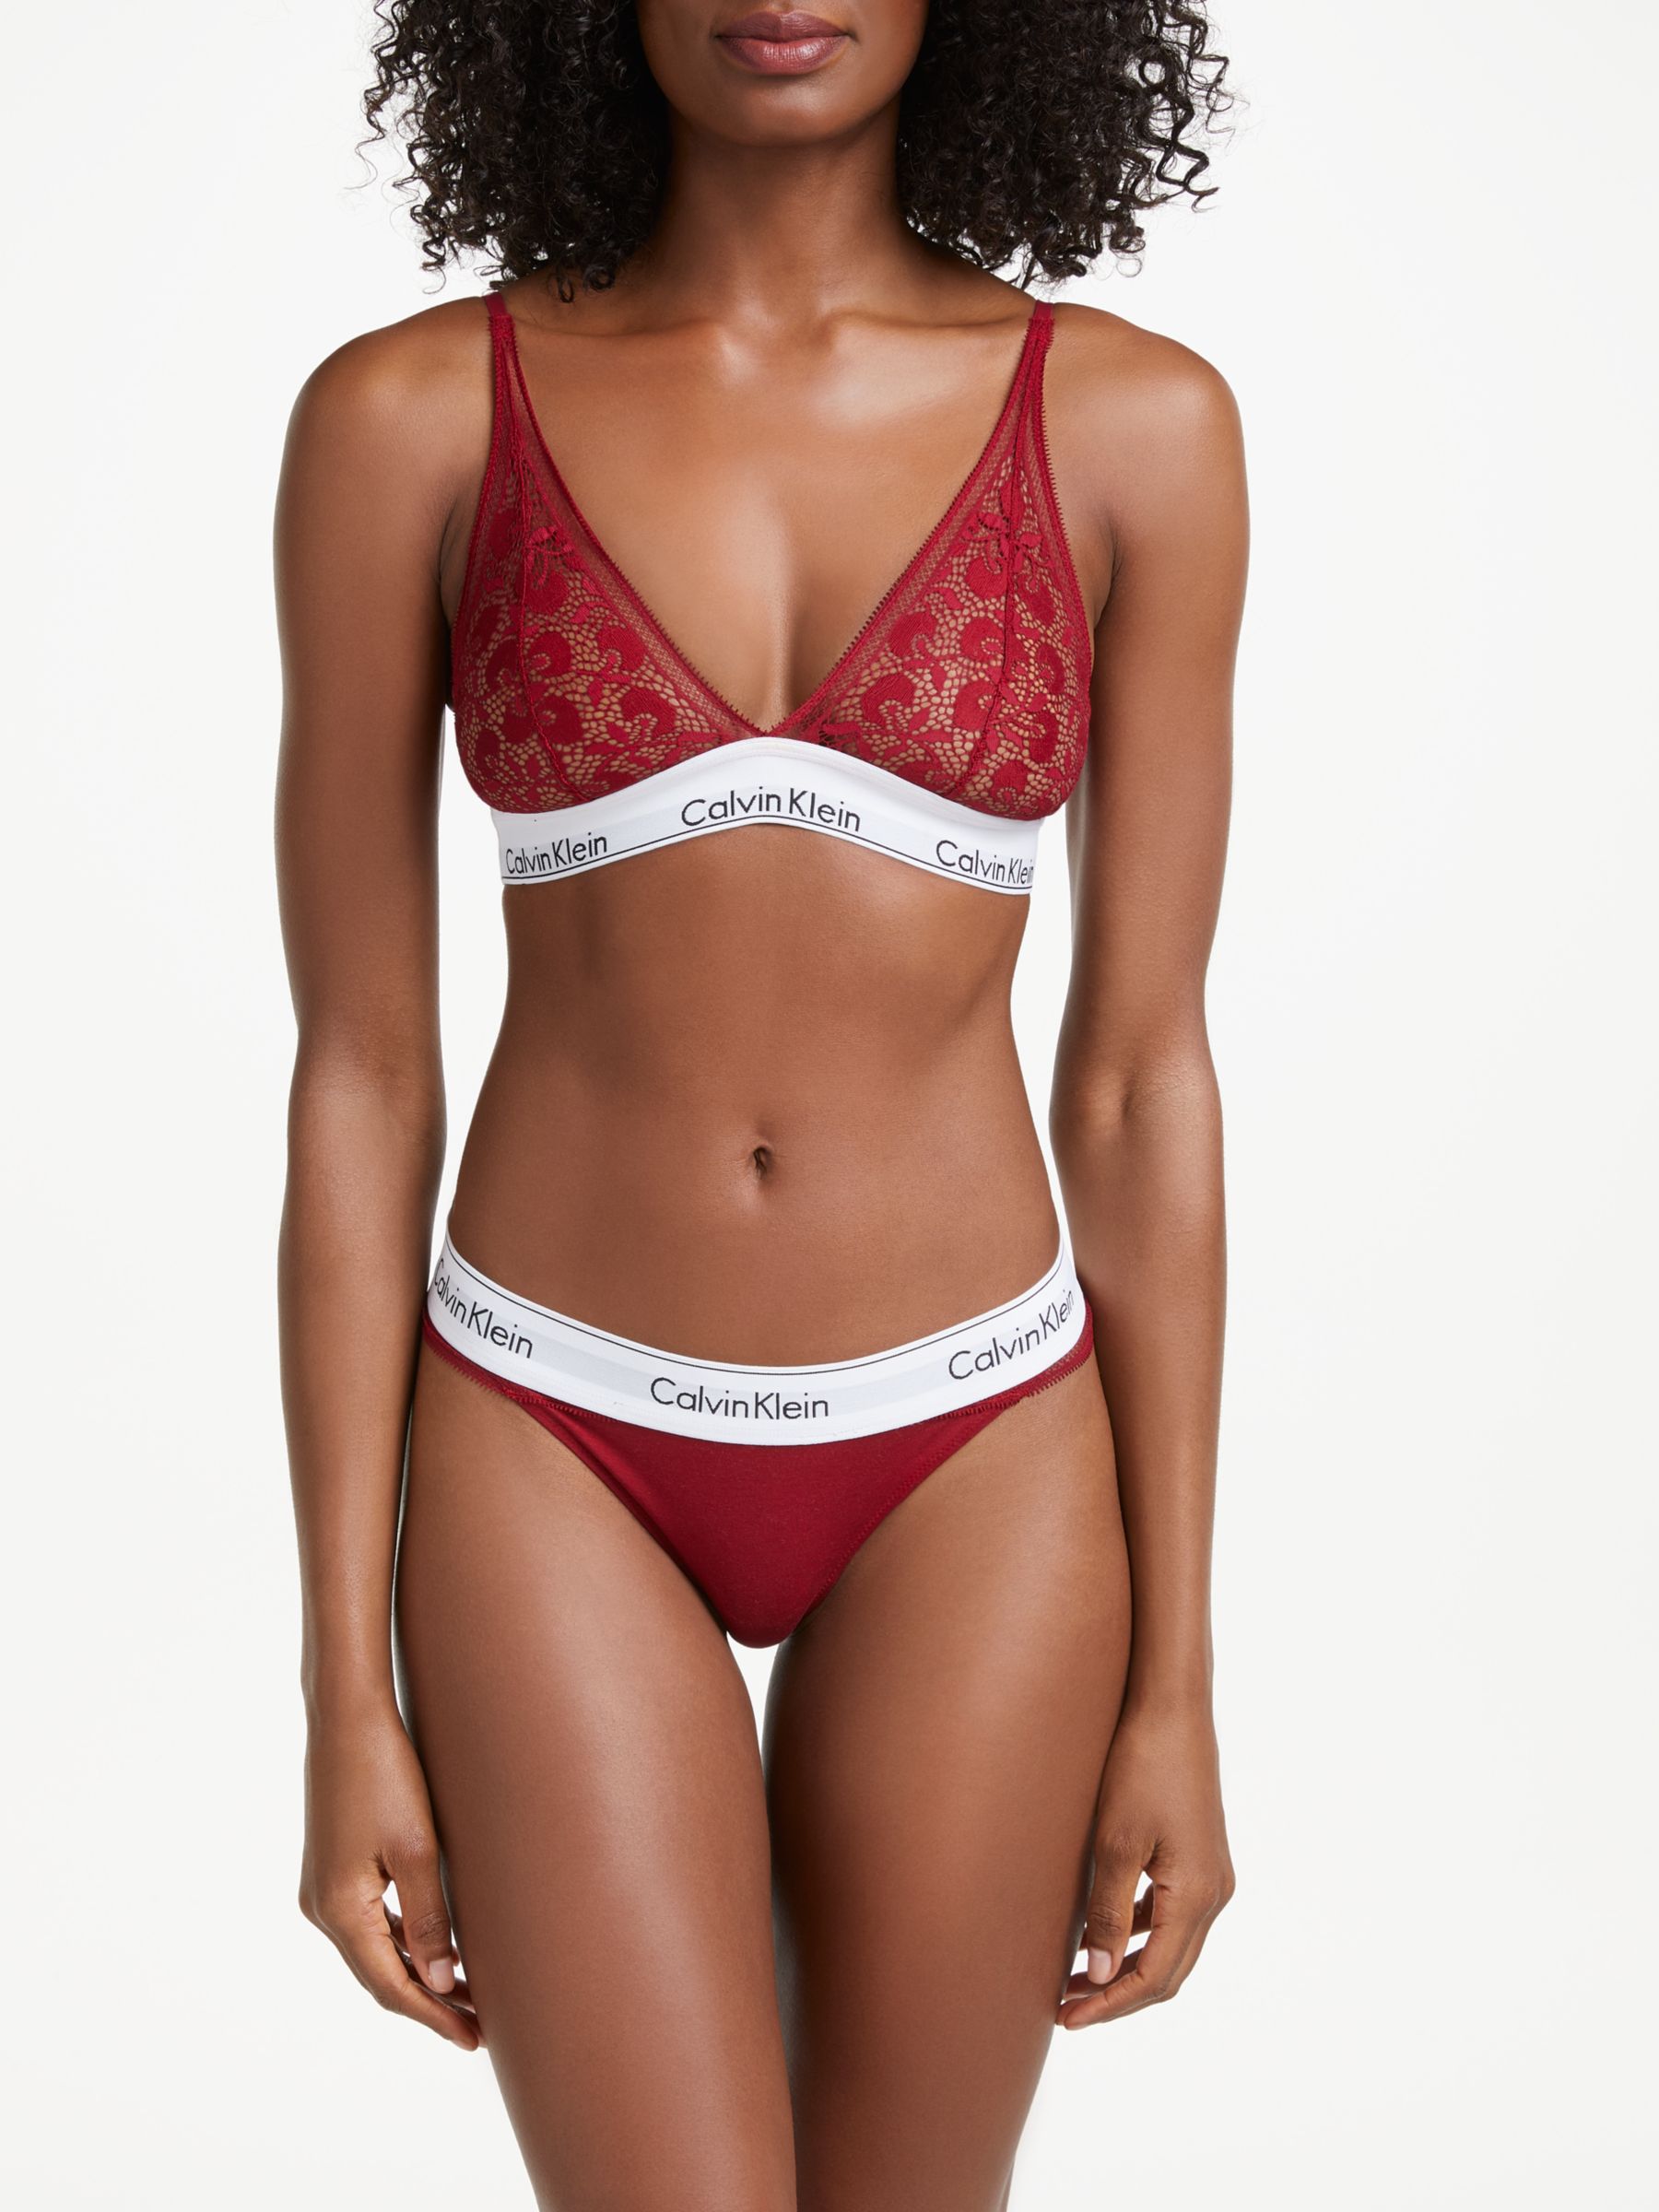 Modern holiday triangle bra in cotton mix, intense red, Calvin Klein  Underwear